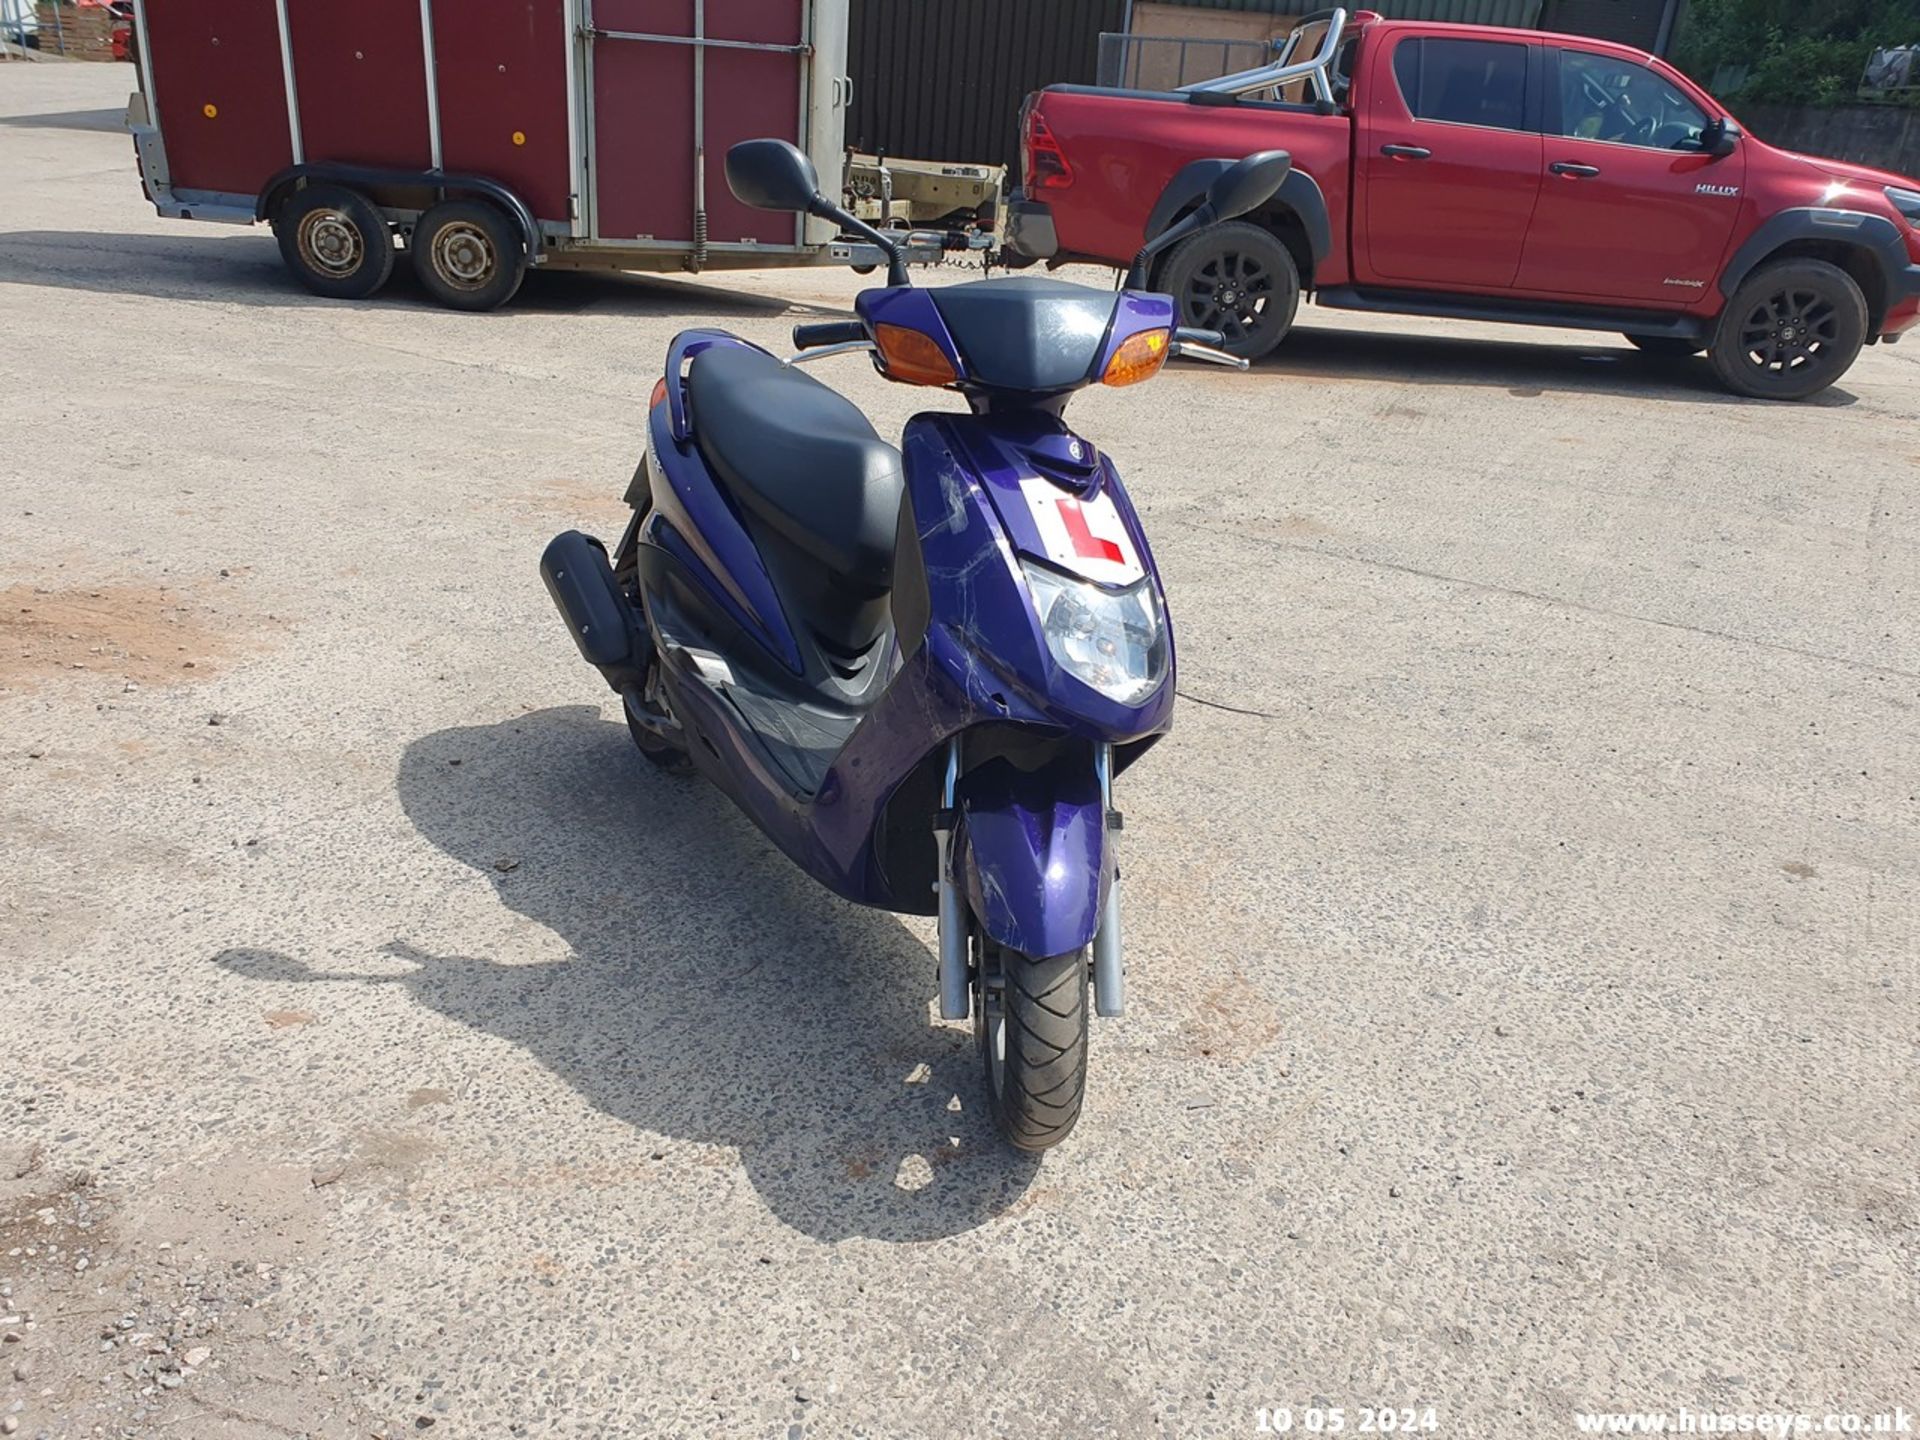 05/54 YAMAHA NXC 125 CYGNUS - 124cc Motorcycle (Blue, 18k) - Image 10 of 19